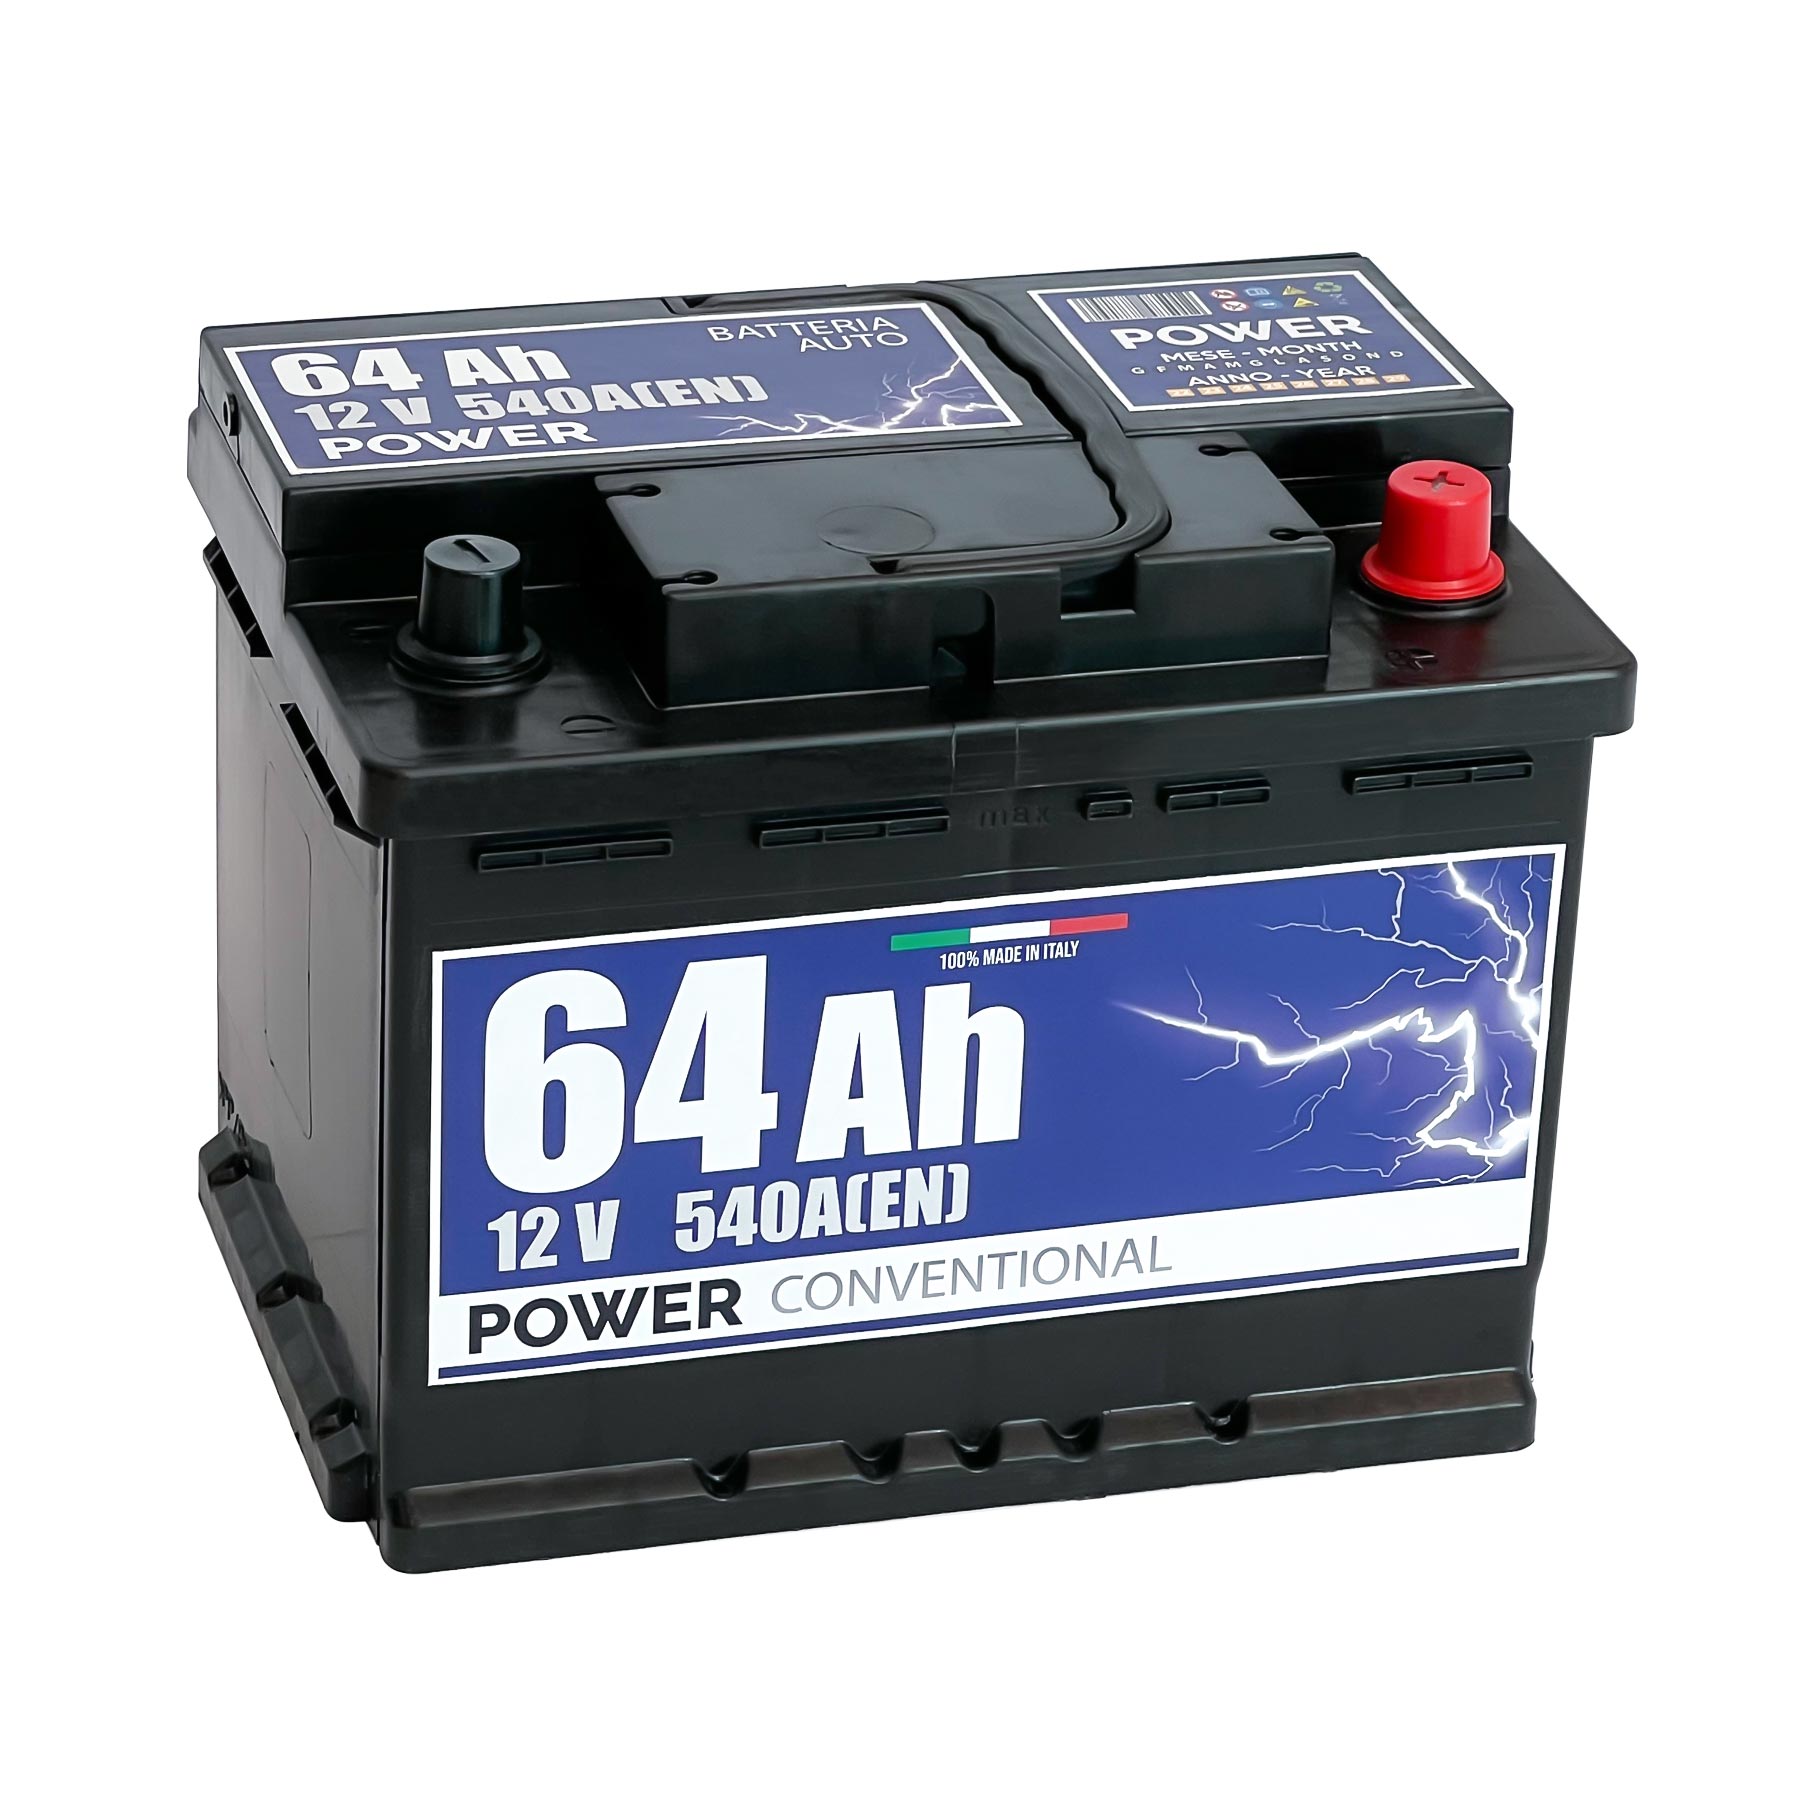 Batteria originale Power Conventional PB640, dimensioni 242 x 175 x 190, polo positivo a destra, 12 volt, 64 amperora, 540 ampere. Batteria per auto e veicoli leggeri.